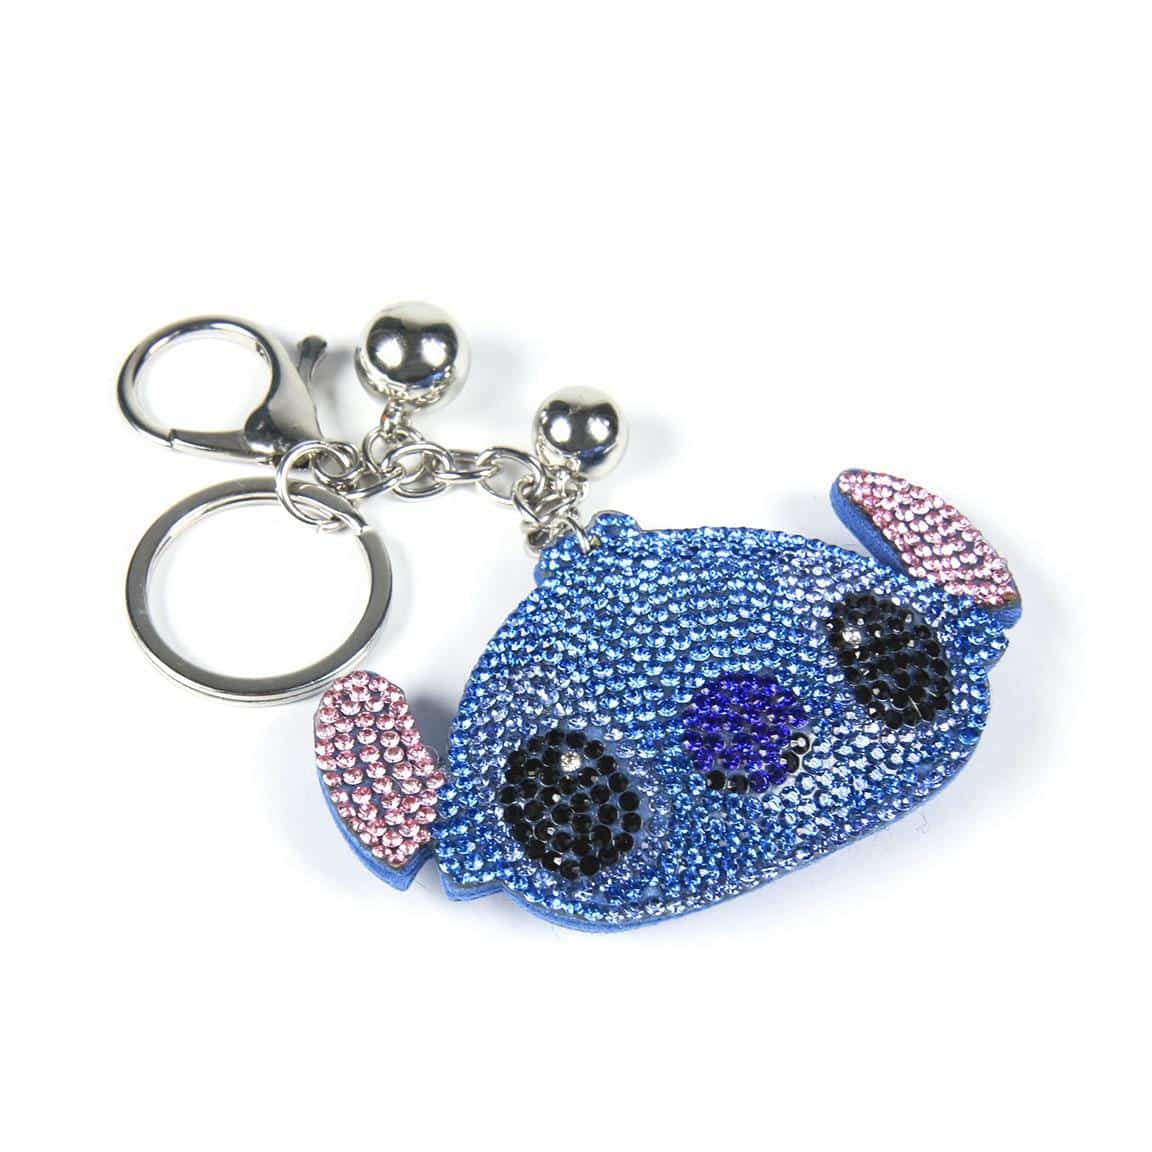 Acheter Porte-clés Disney Snuglets - Stitch en ligne?